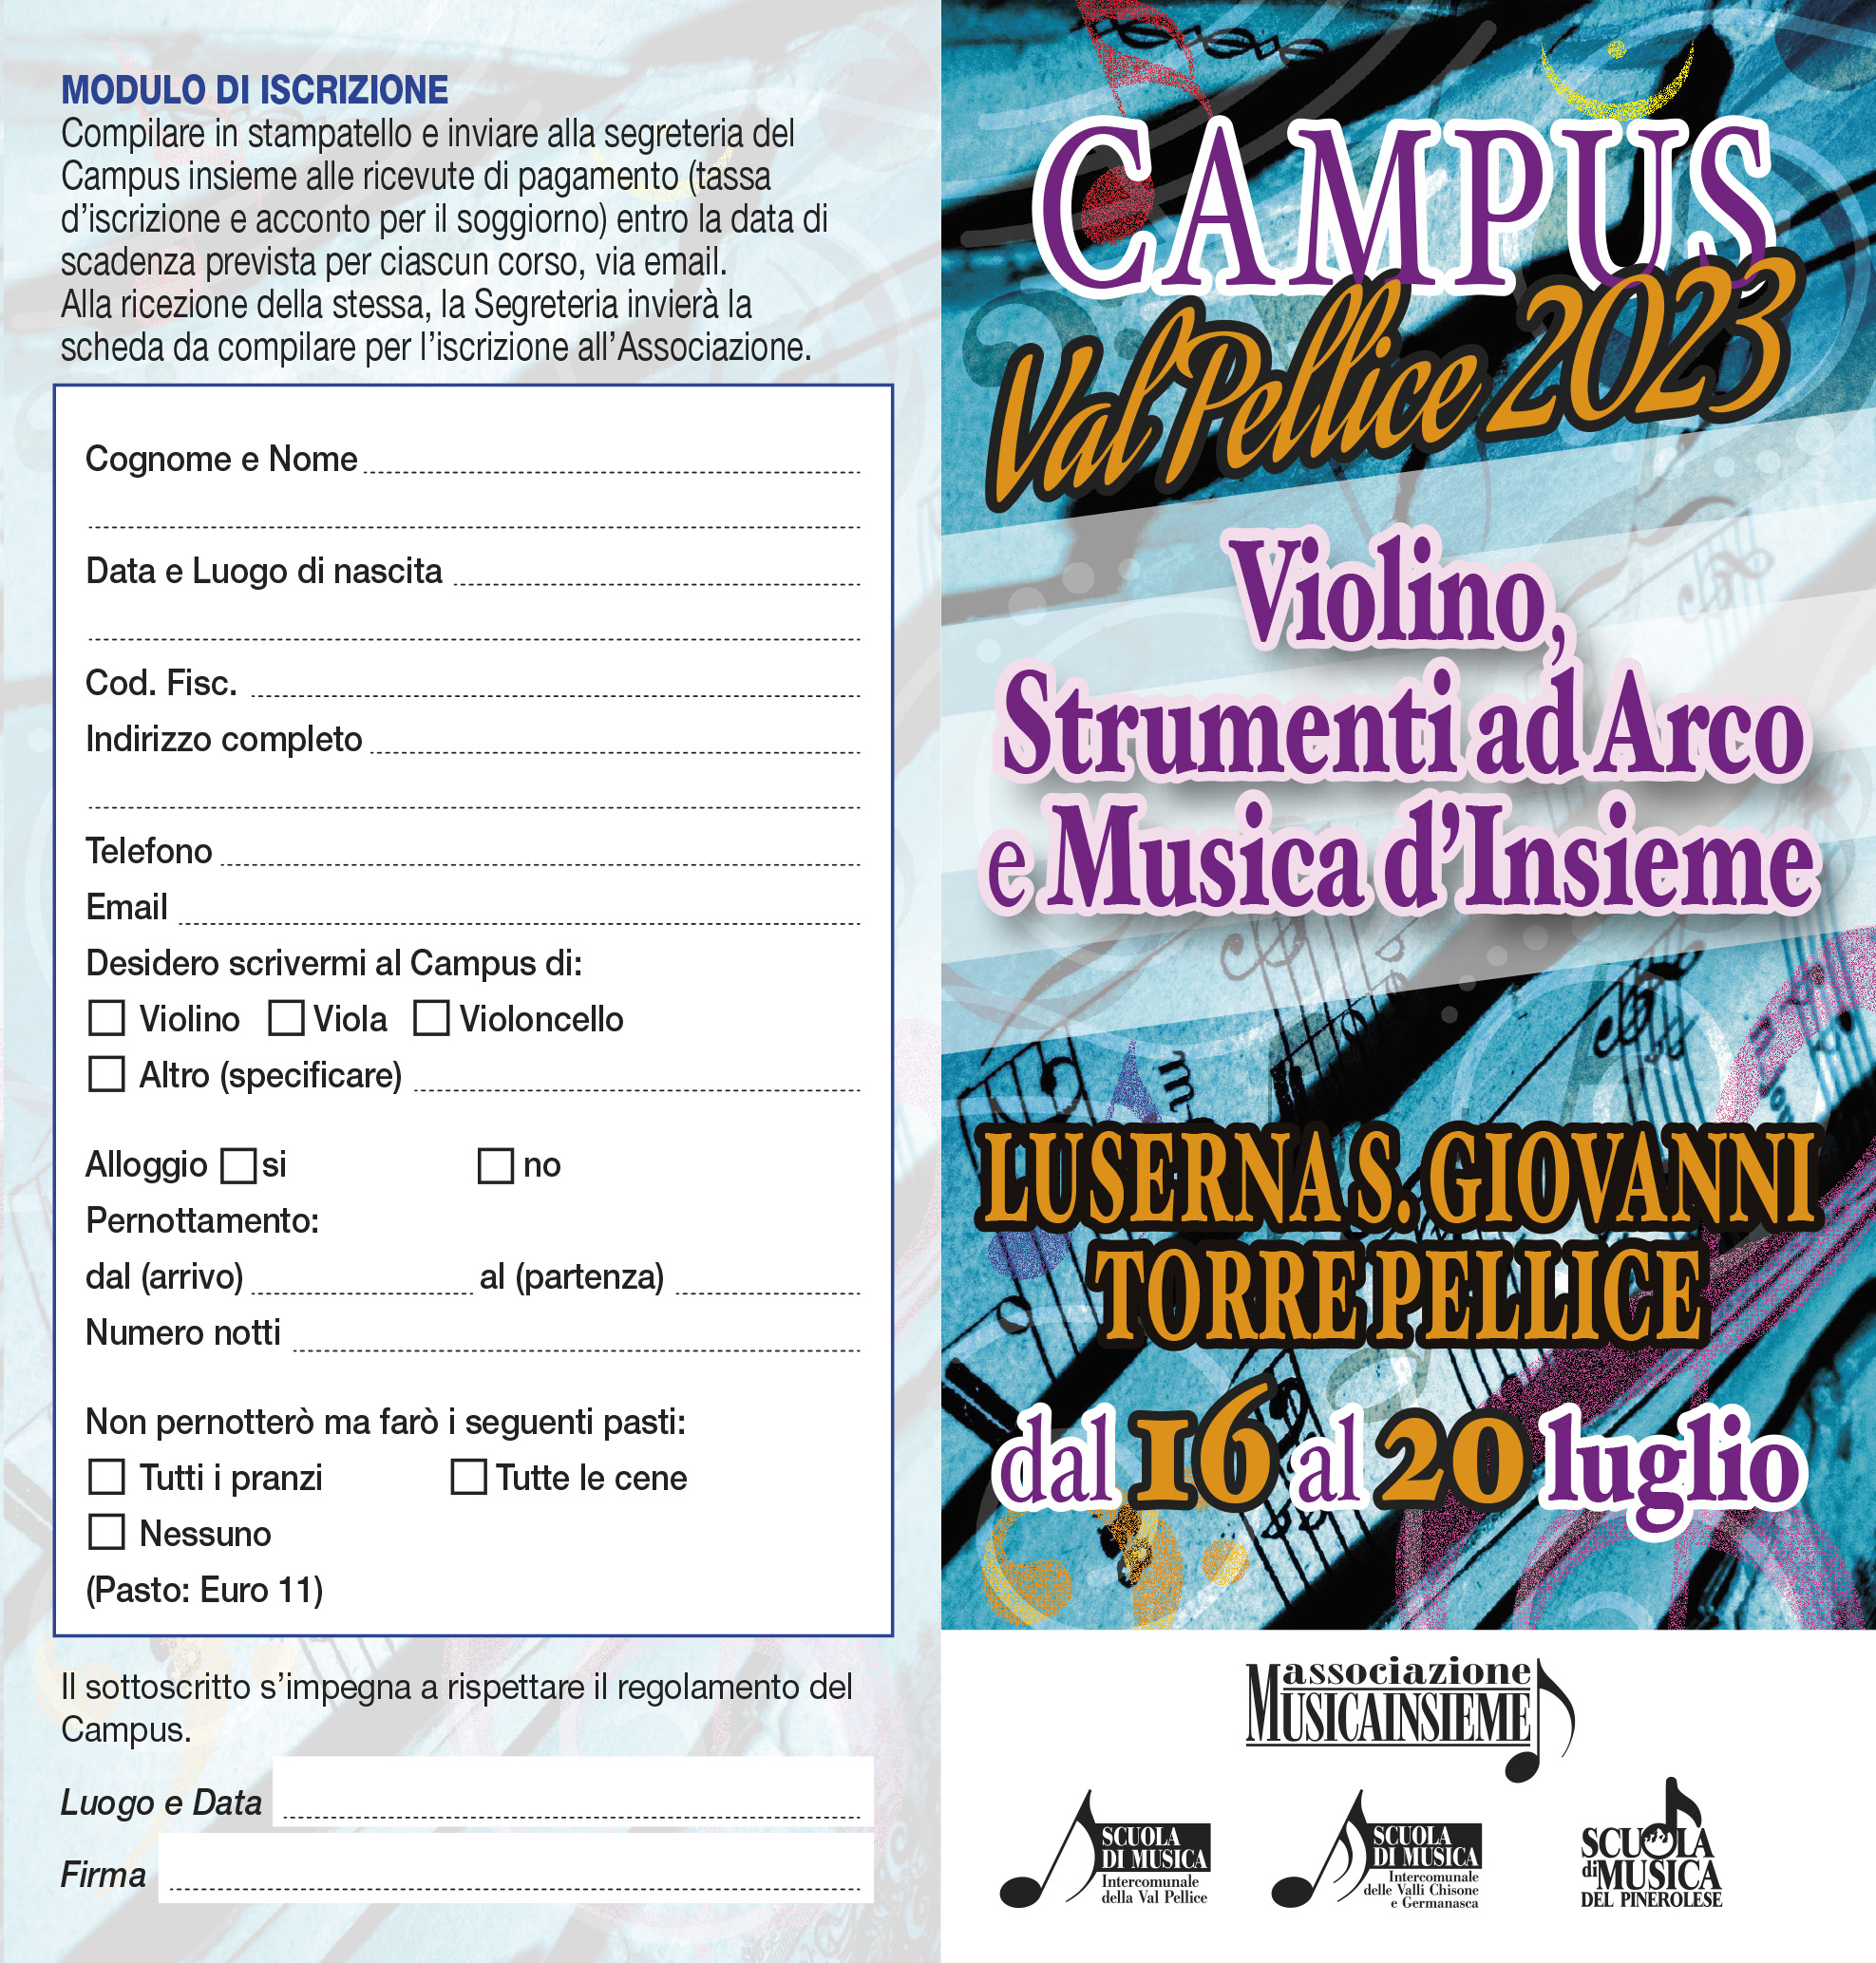 Campus Val Pellice 2023 Violino, Strumenti ad Arco e Musica Insieme.